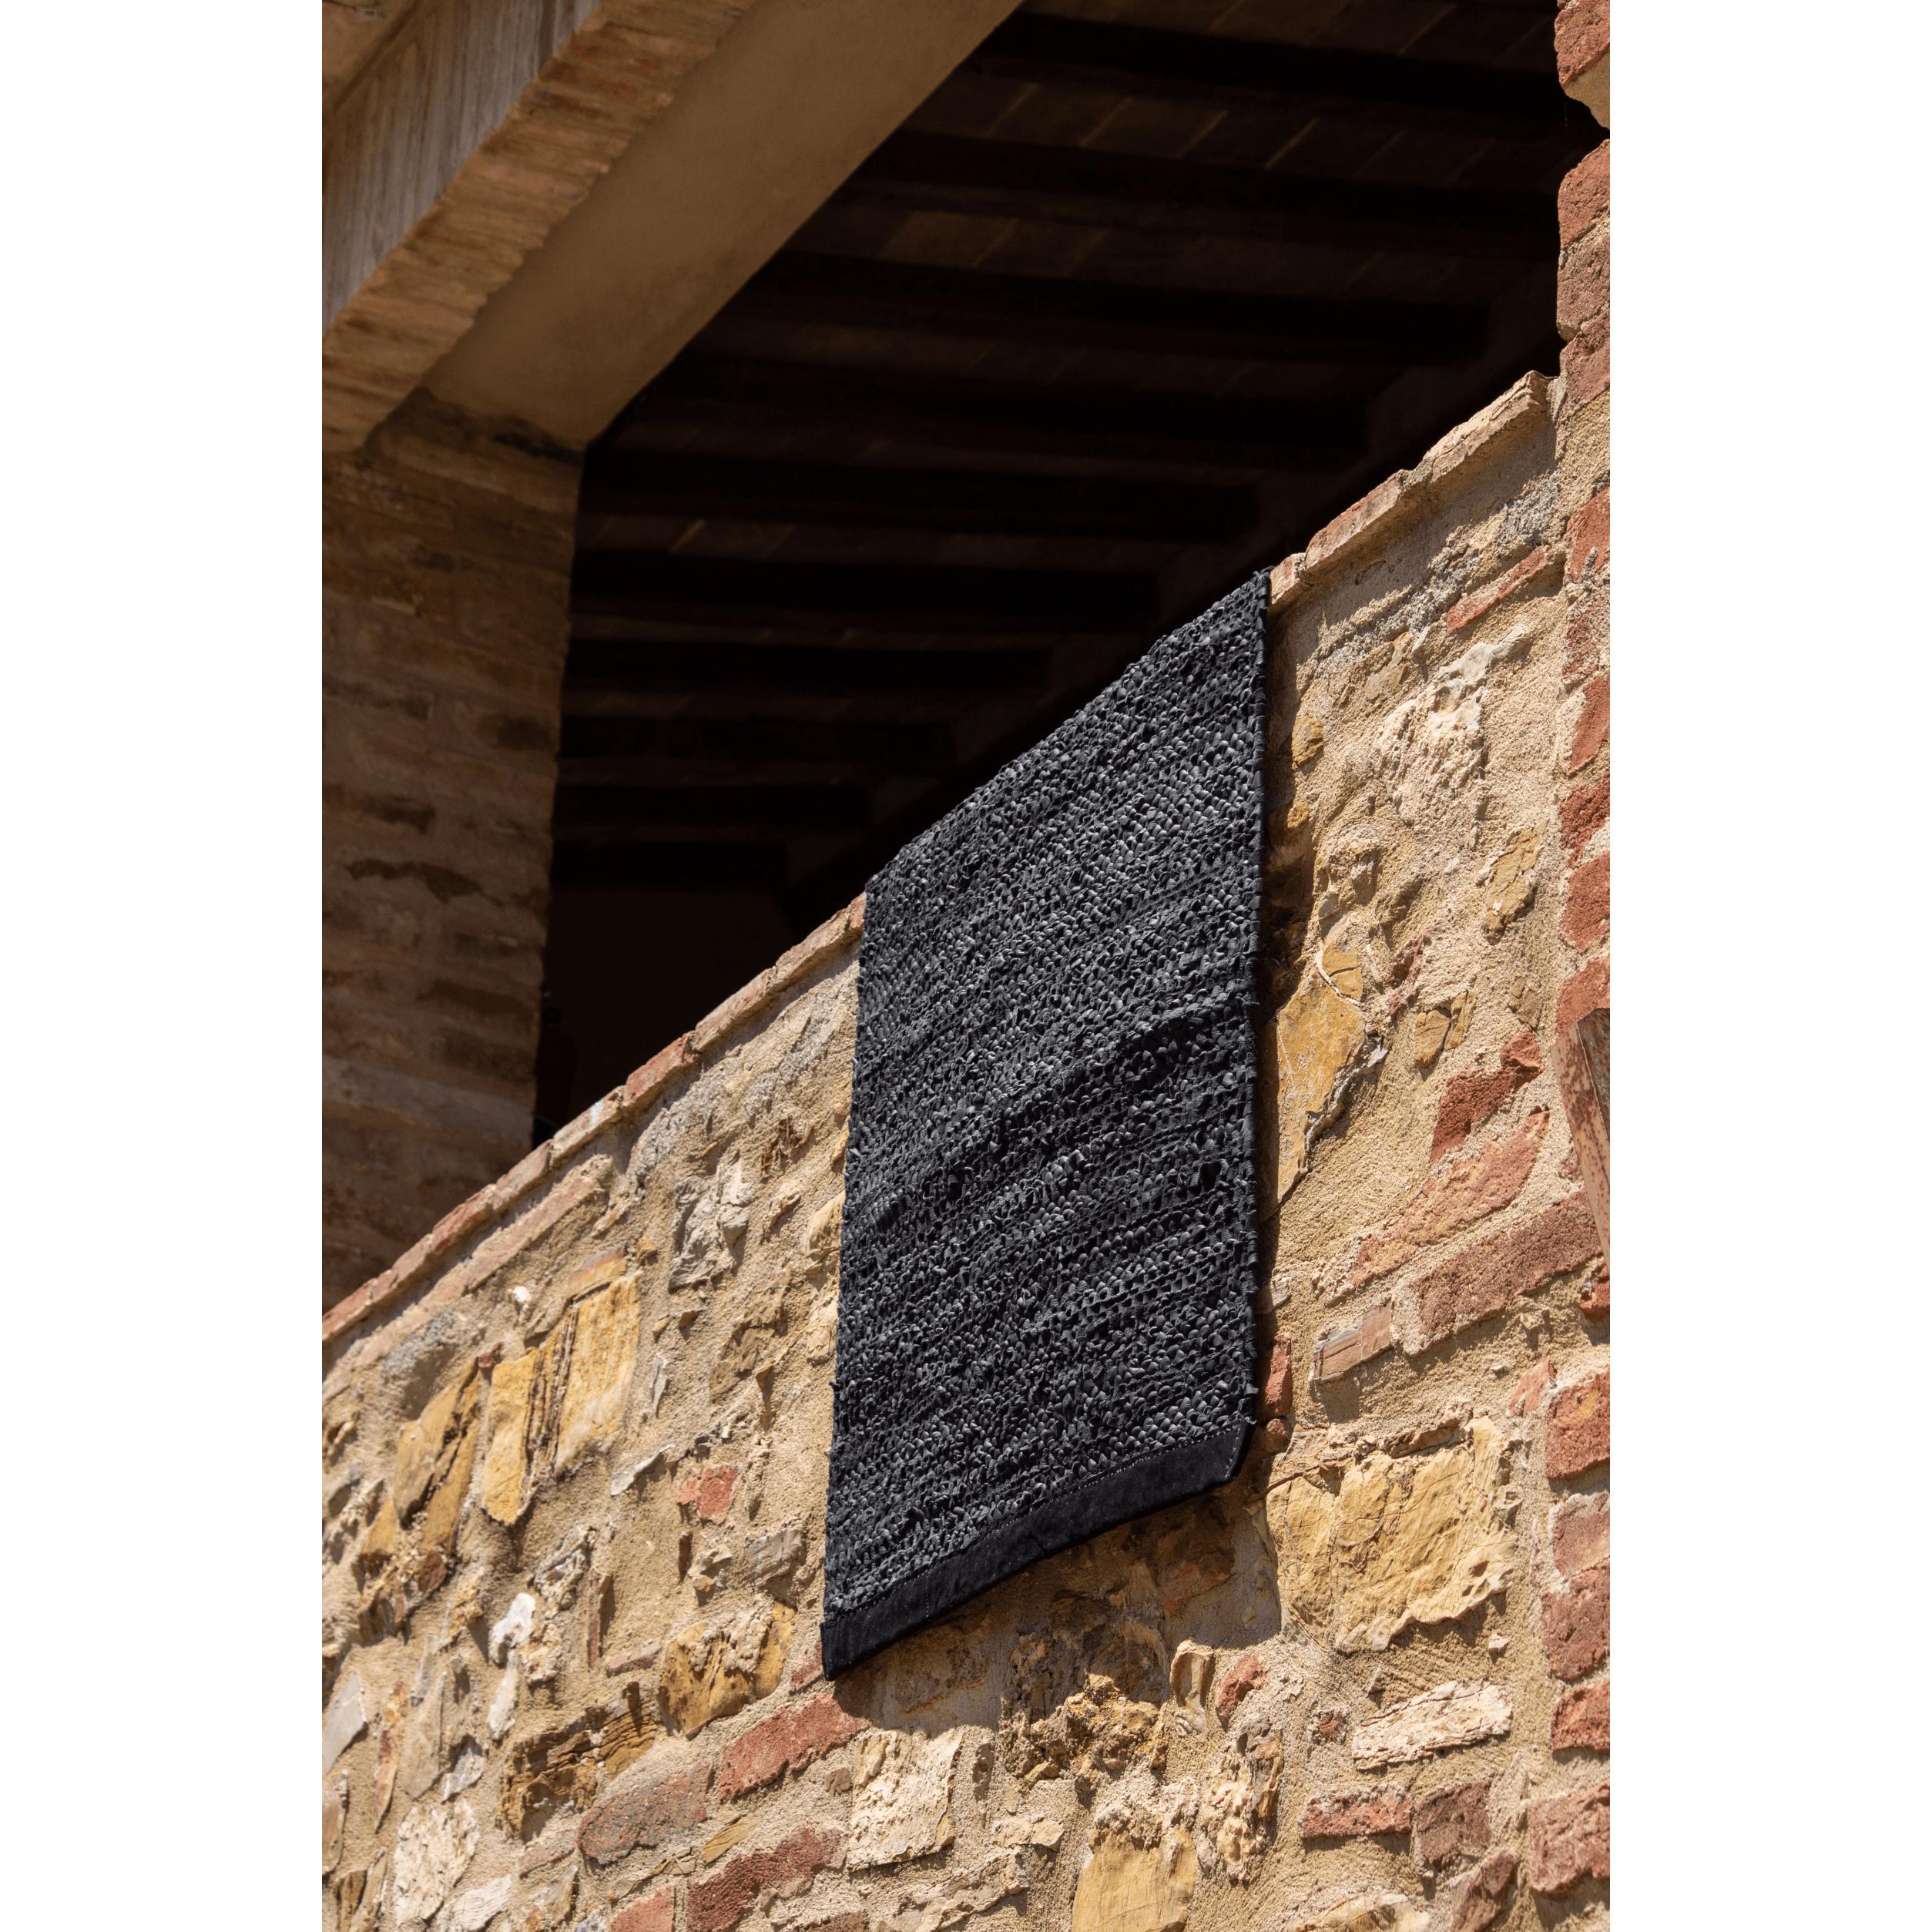 Rug Solid Lederen vloerkleed zwart, 170 x 240 cm